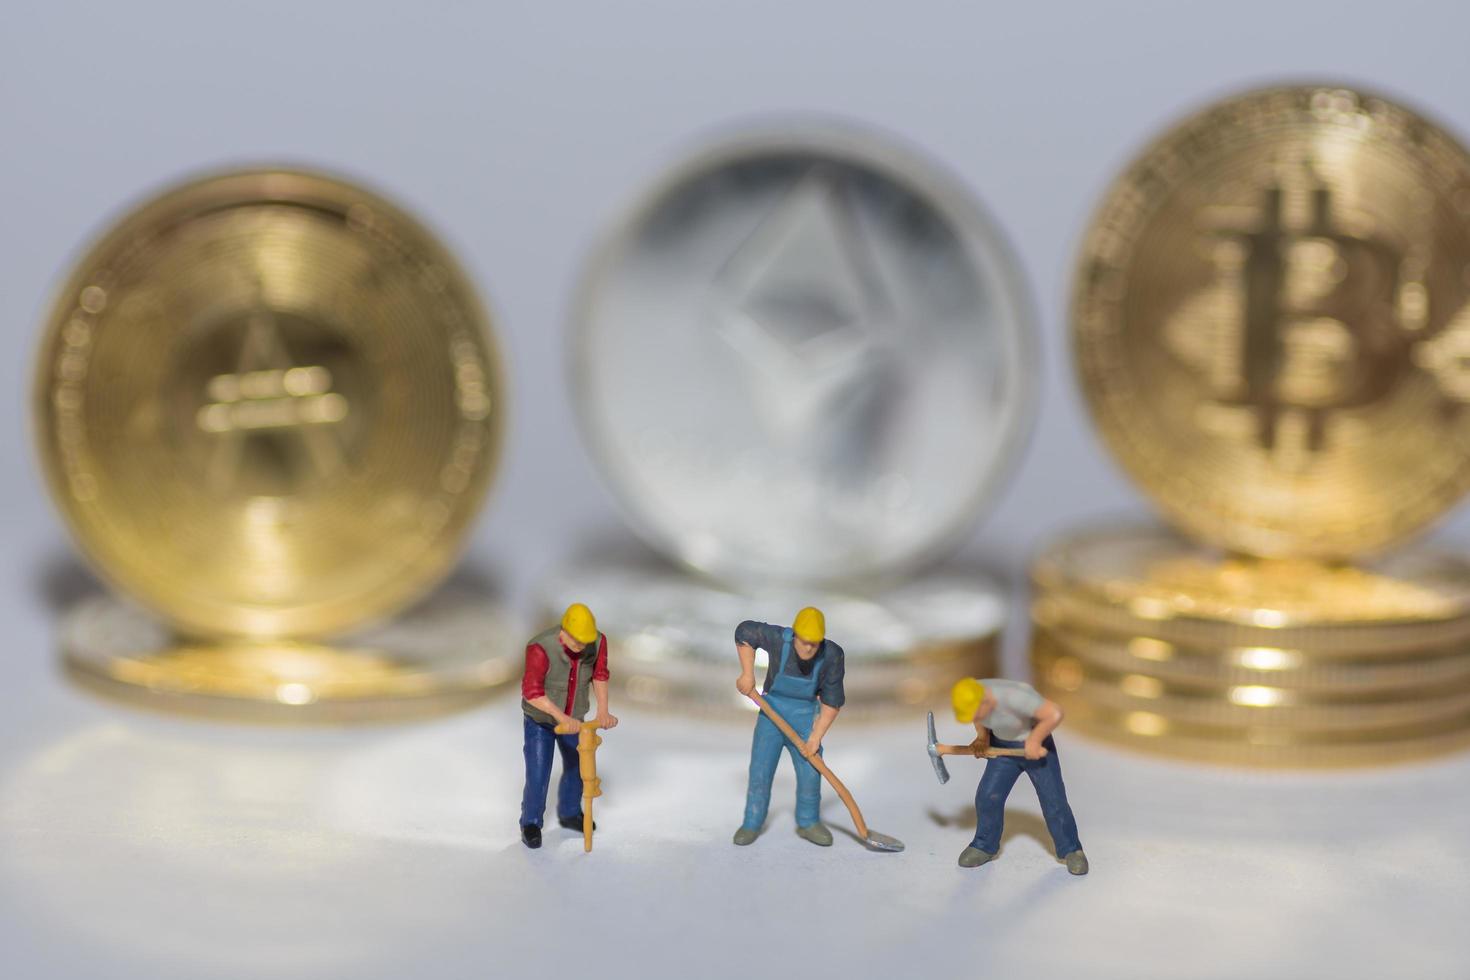 waardevolle cryptomunten bitcoin ether en ada op een rij met drie arbeiders op grijs foto